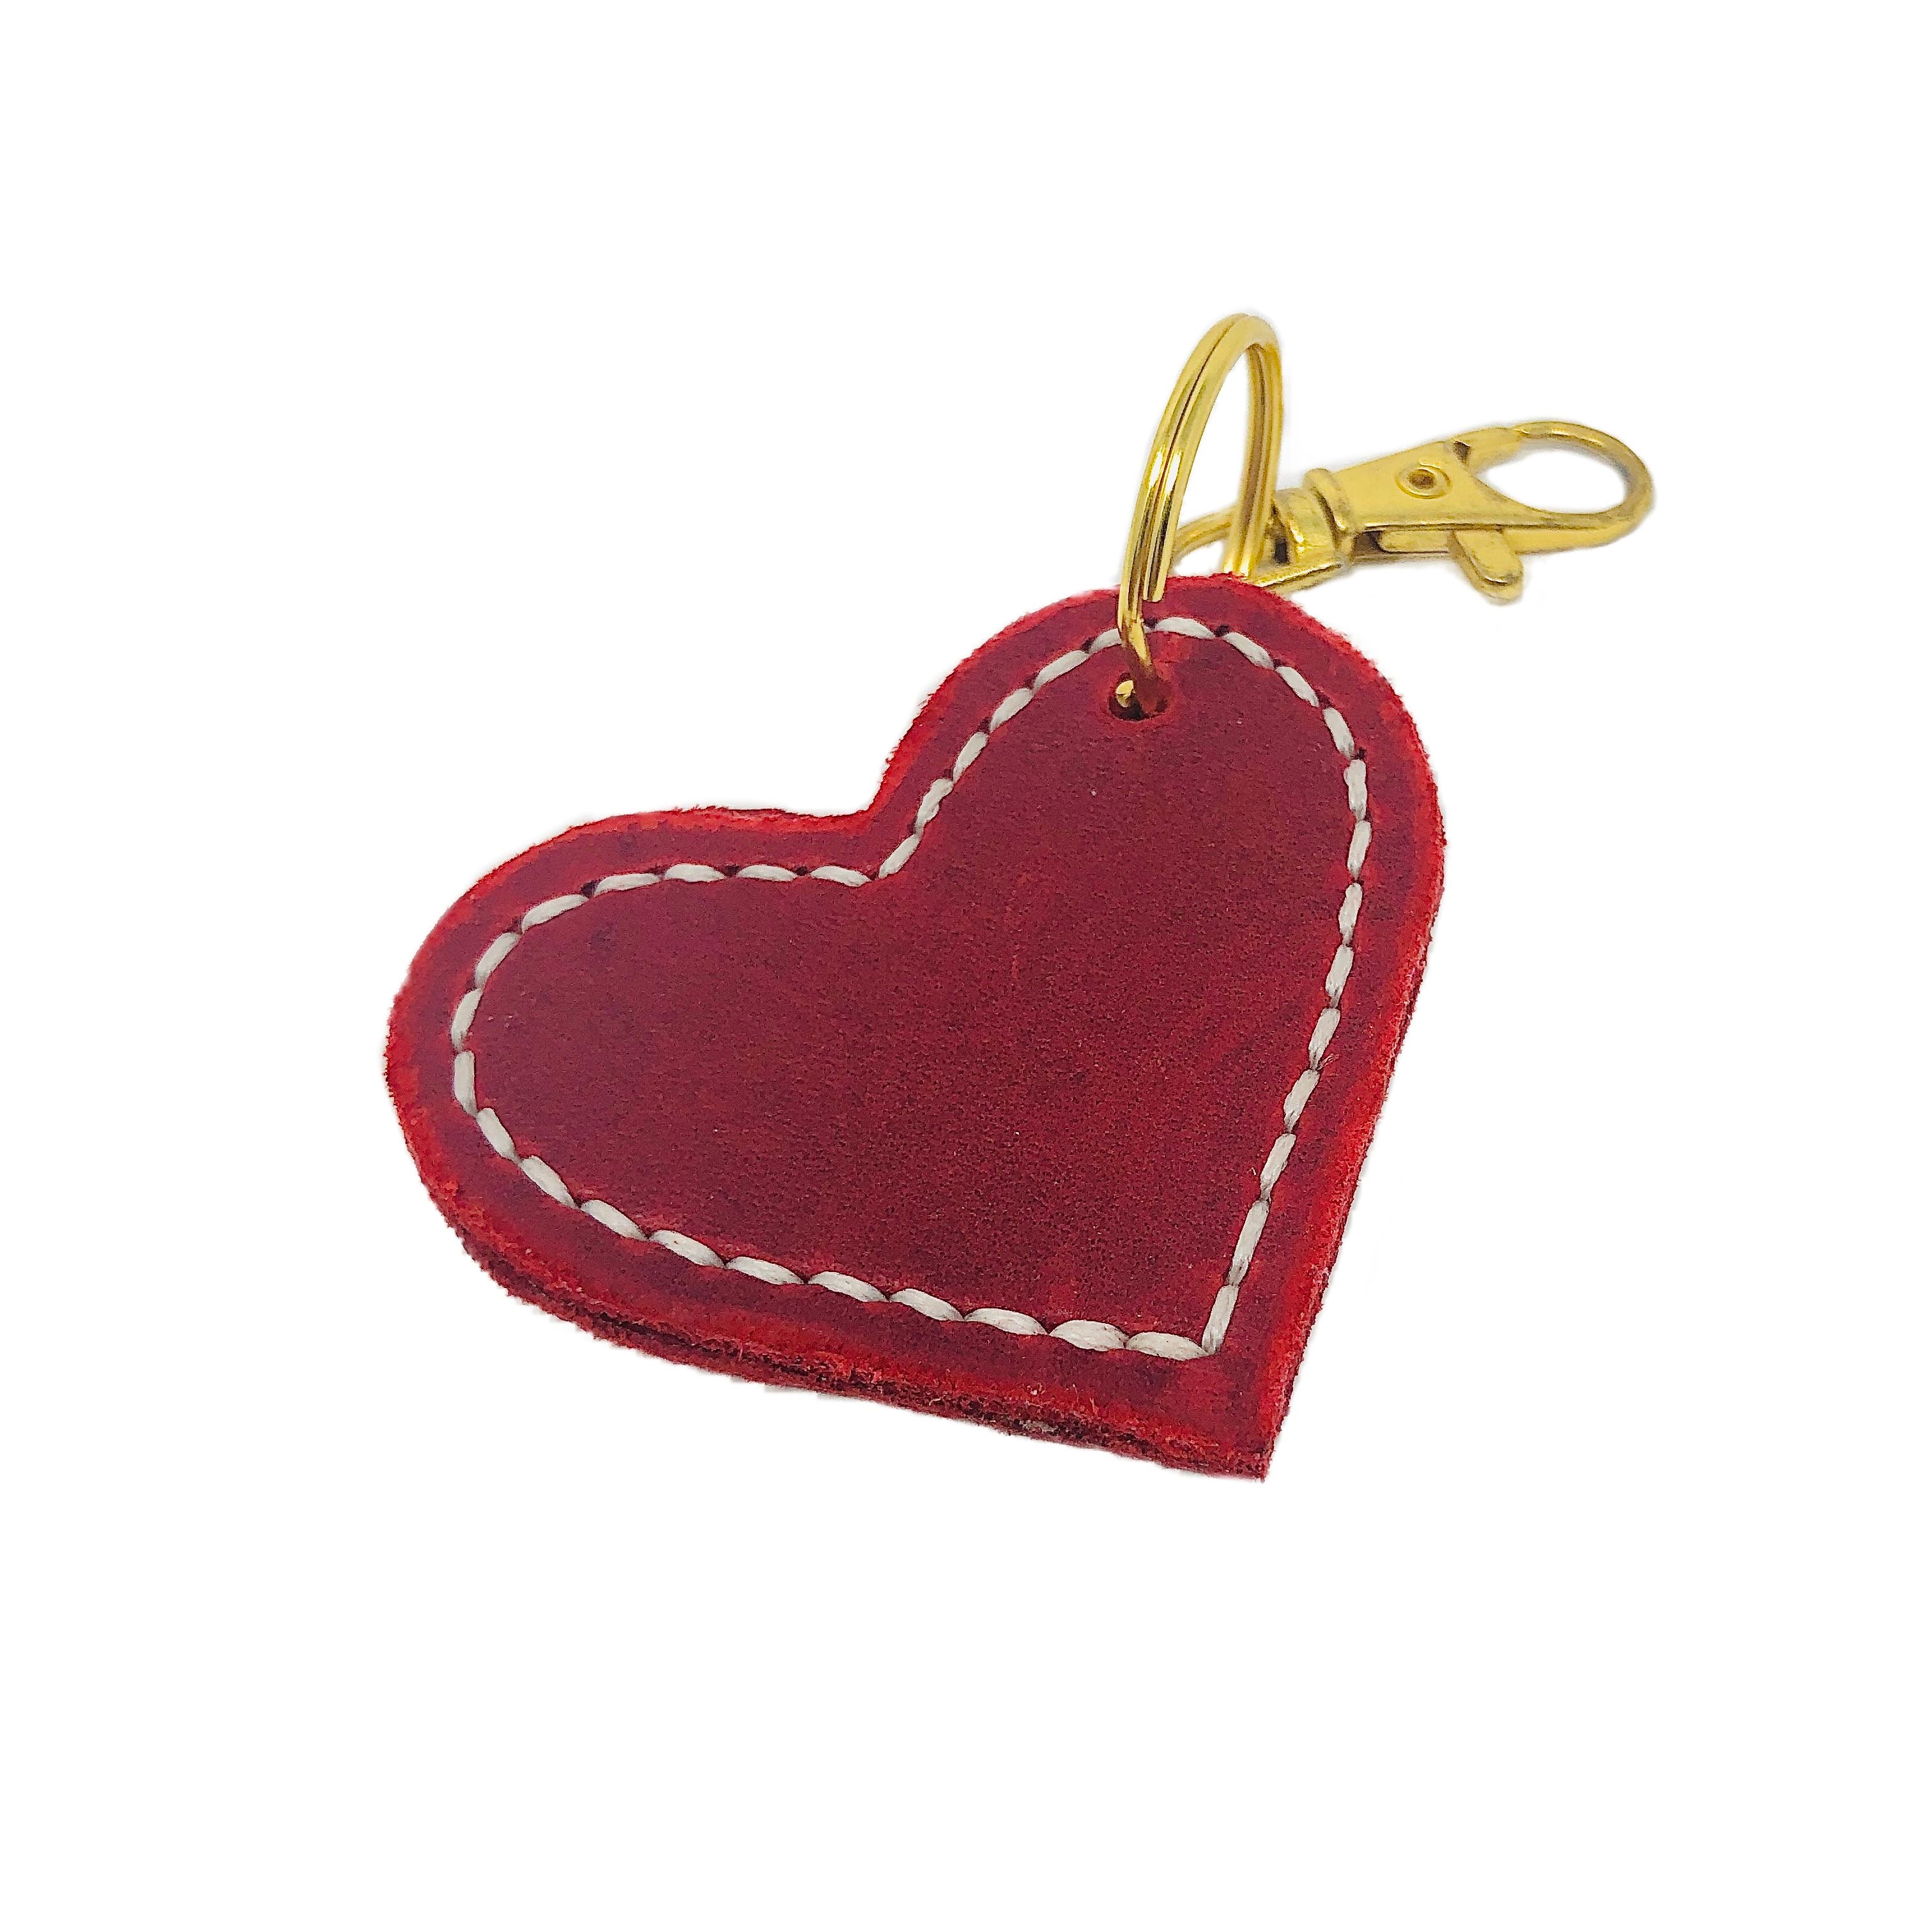 Genuine Leather Heart Shape Key Chain